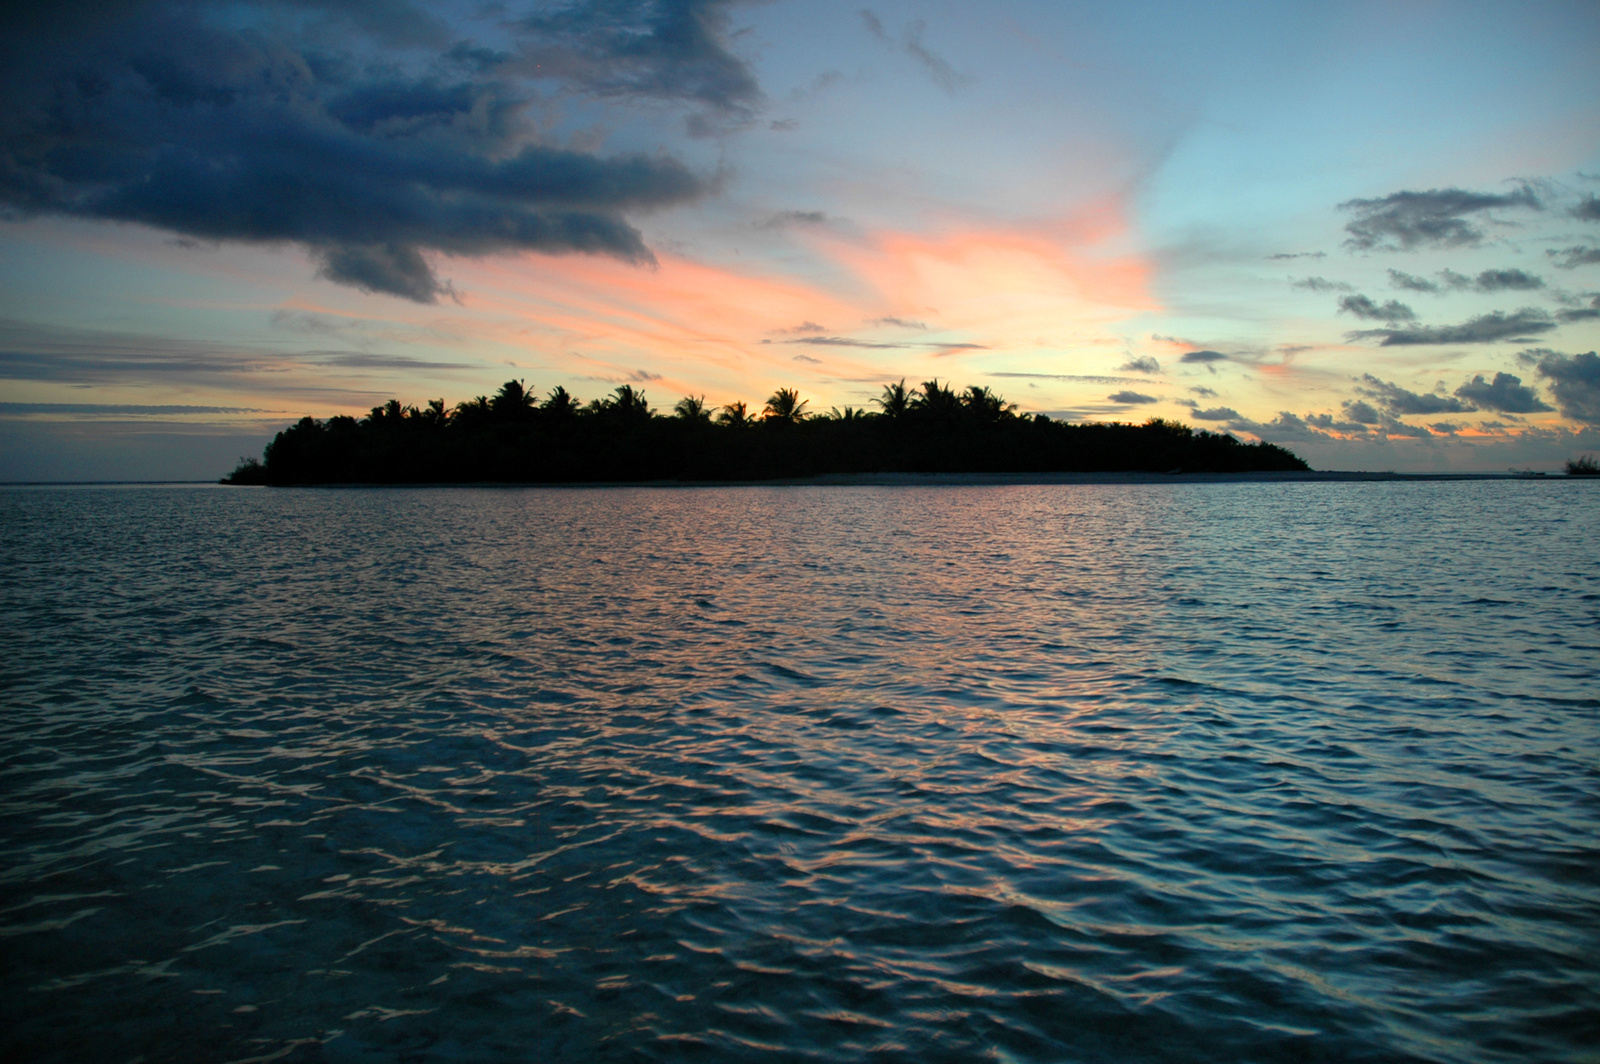 Lakatlan sziget naplemente